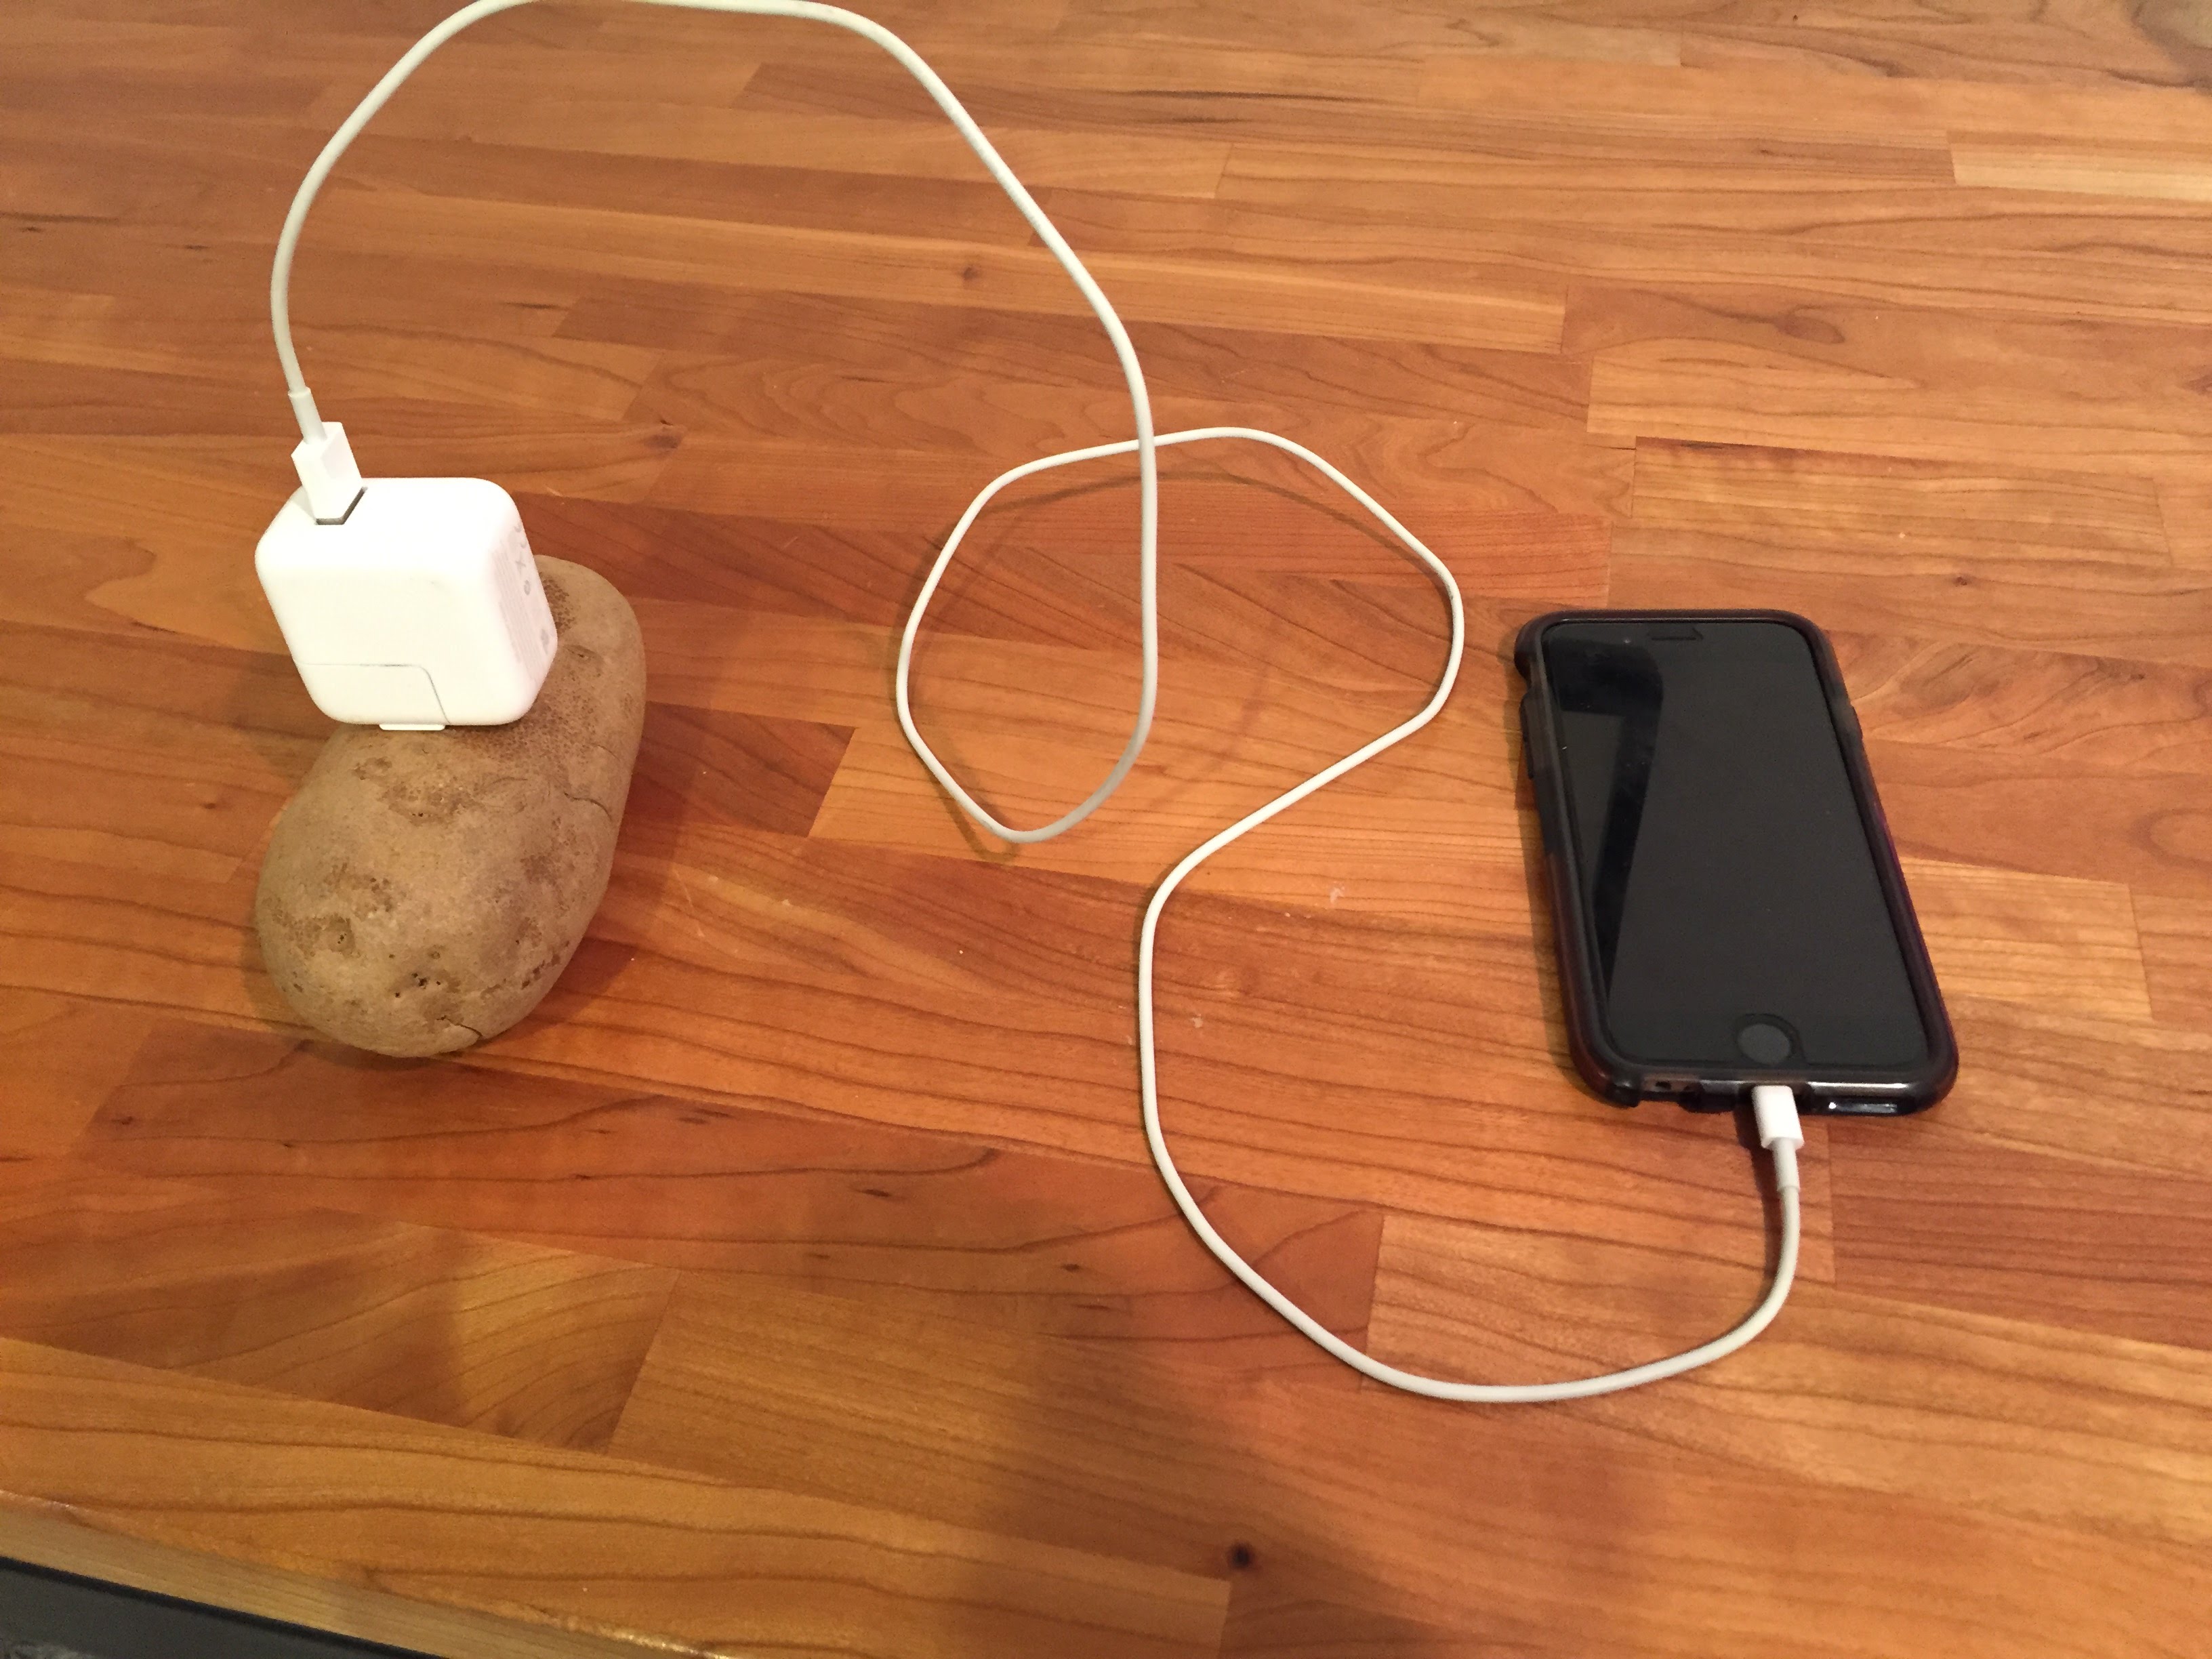 Можно подзаряжать телефон. Зарядка для телефона. Зарядка от картошки. Зарядка из картошки для телефона. Зарядник телефона из картошки.